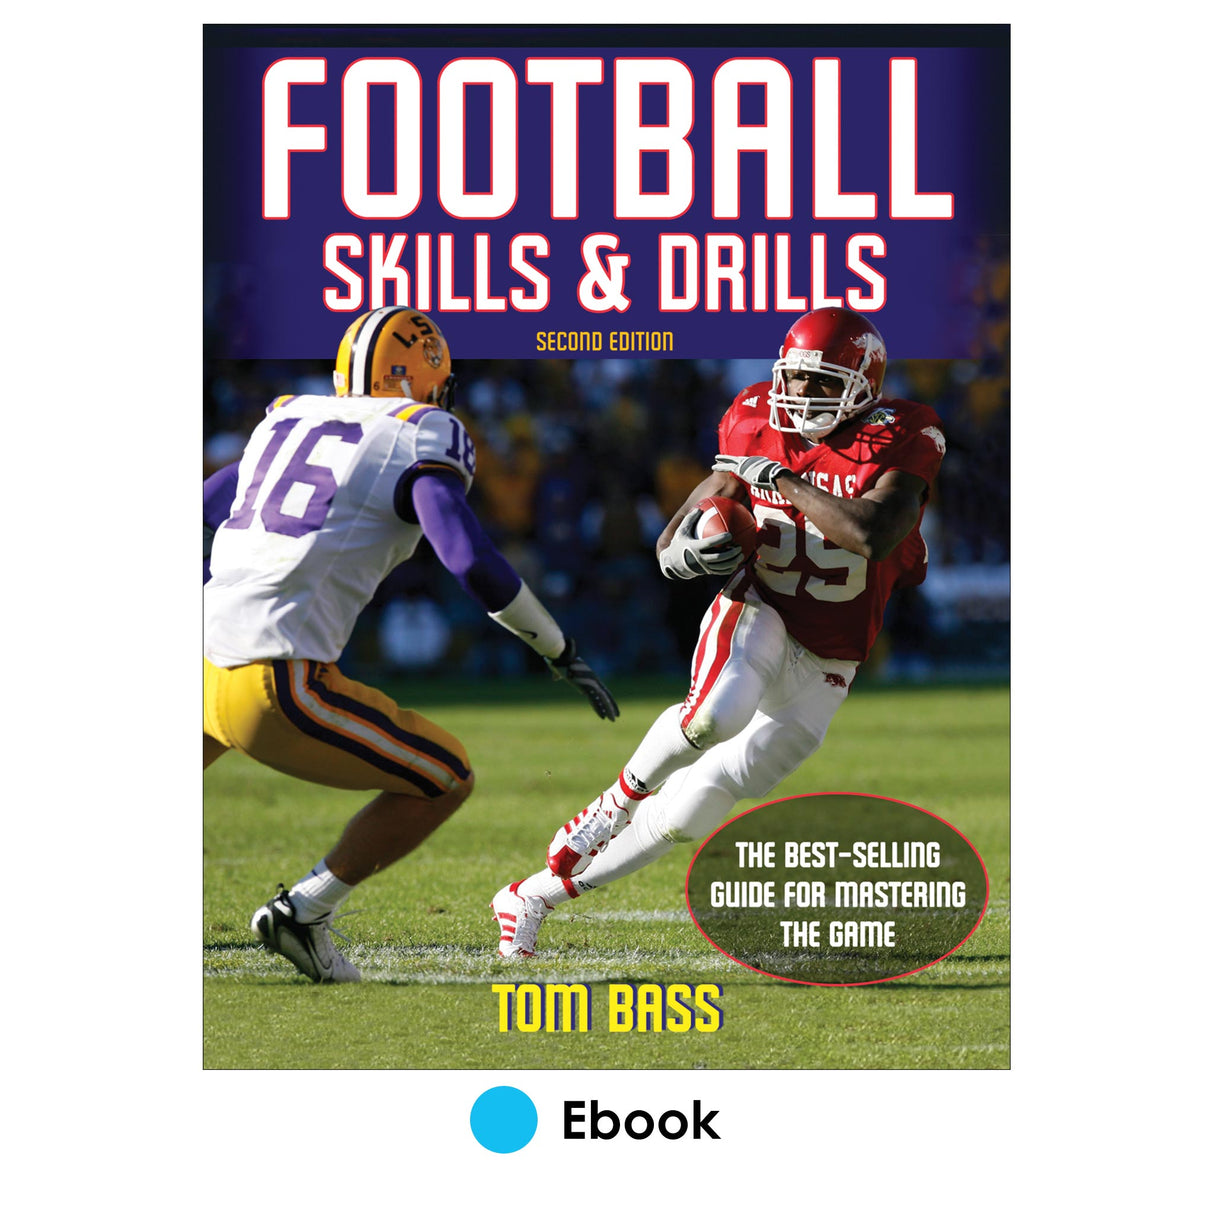 Football Skills & Drills 2nd Edition PDF